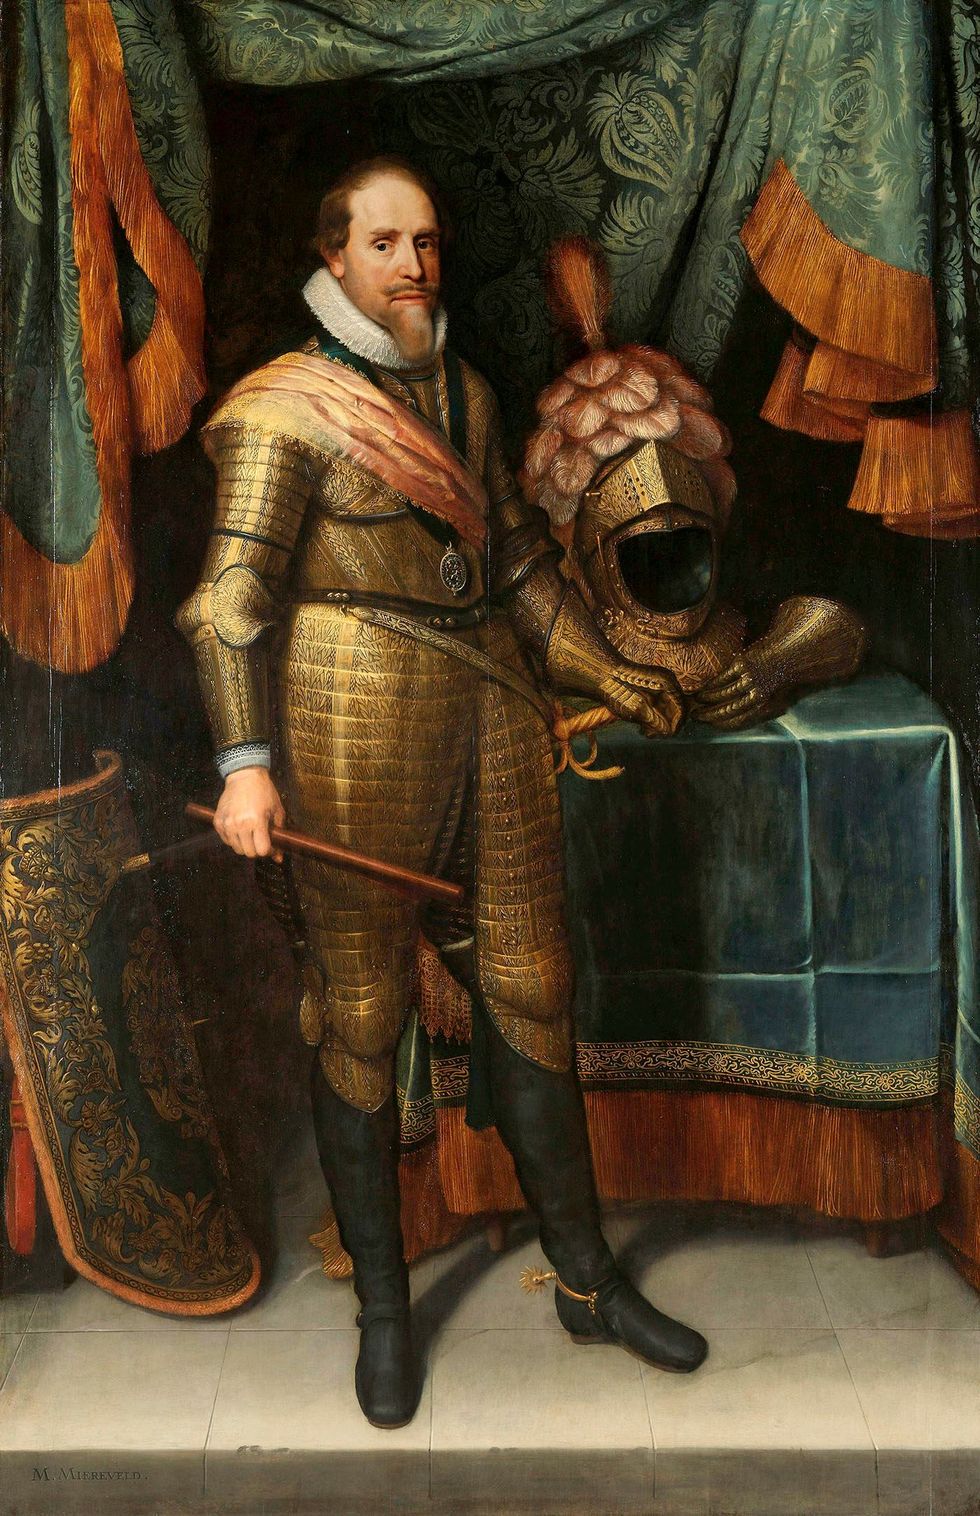 Staatsieportret van stadhouder Maurits prins van Oranje schilderij van Michiel Jansz van Mierevelt ca 16131620